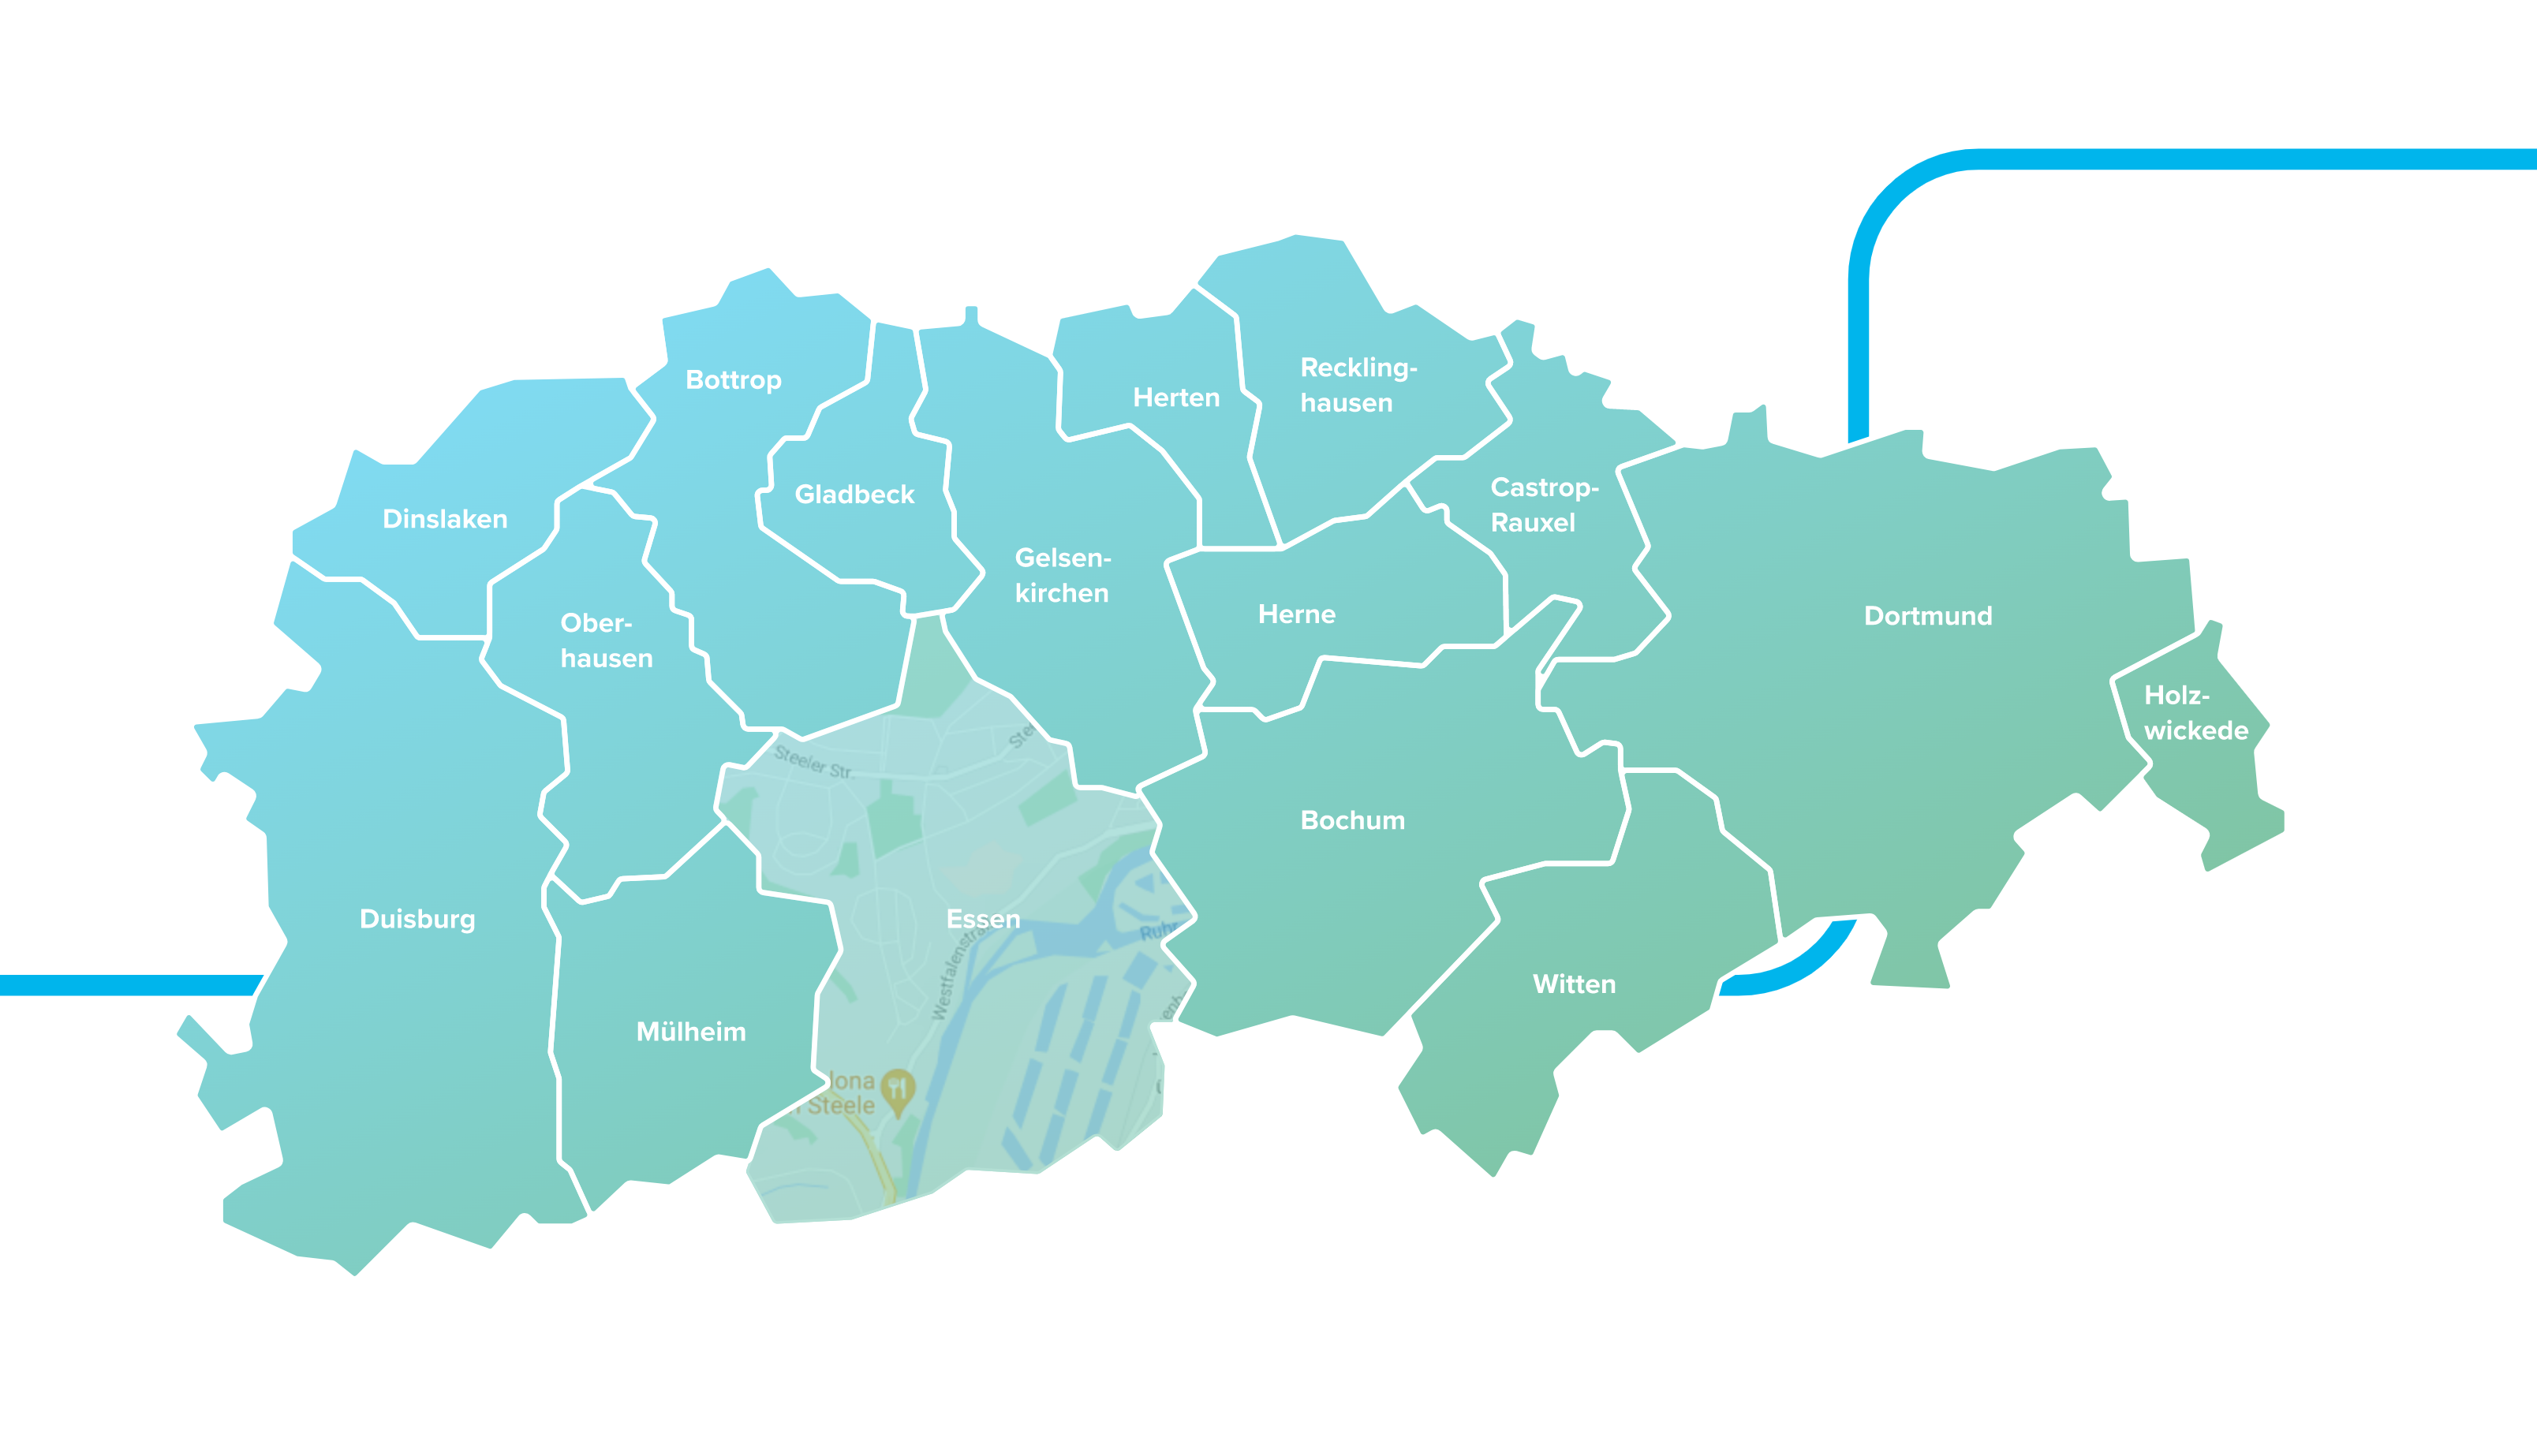 Karte von Emscherstädten, Essen hervorgehoben.